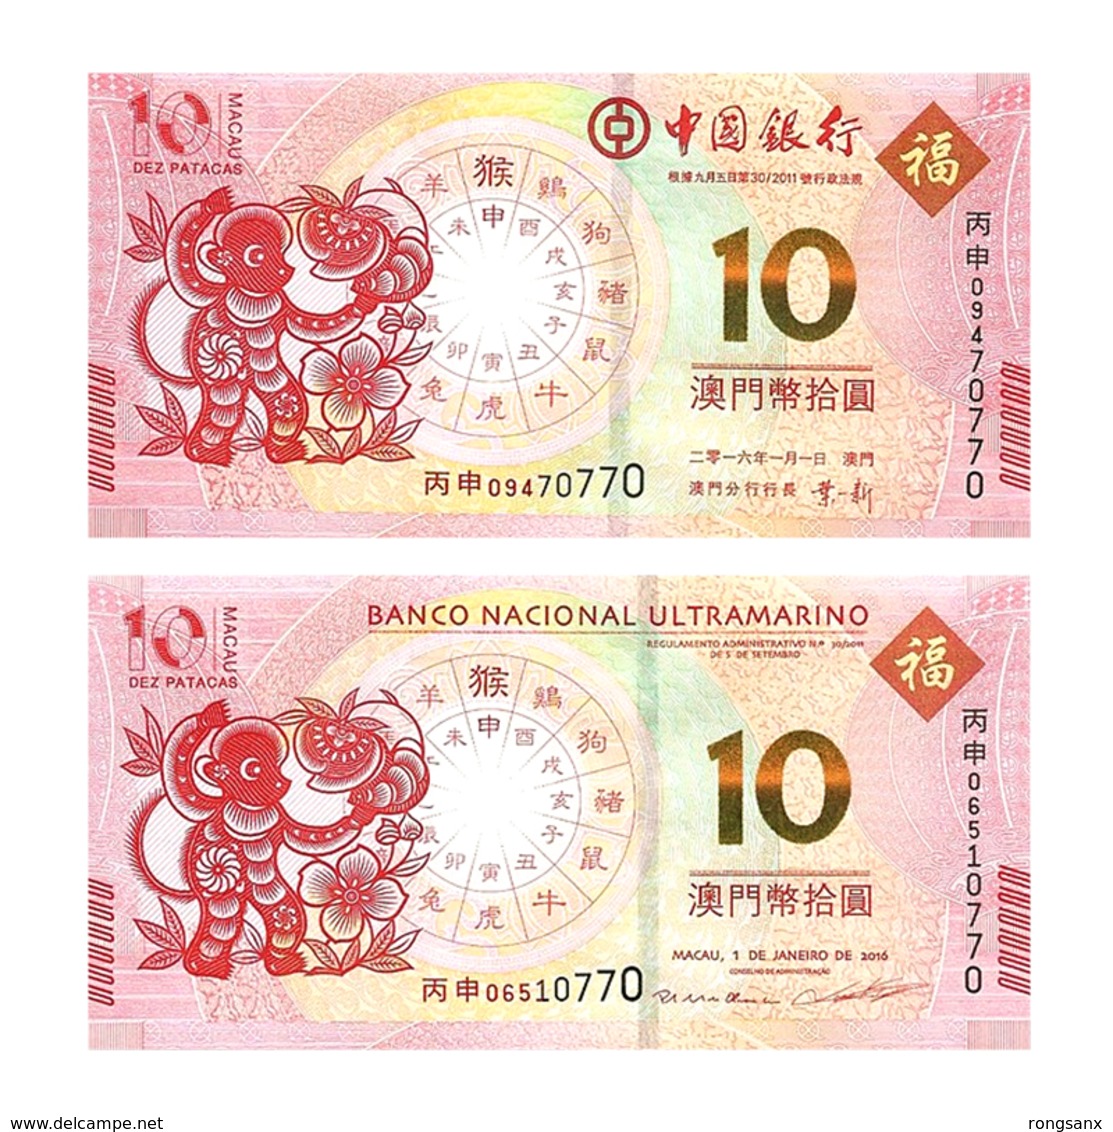 2016 MACAO BANKNOTE YEAR OF THE MONKEY 2V - Macau